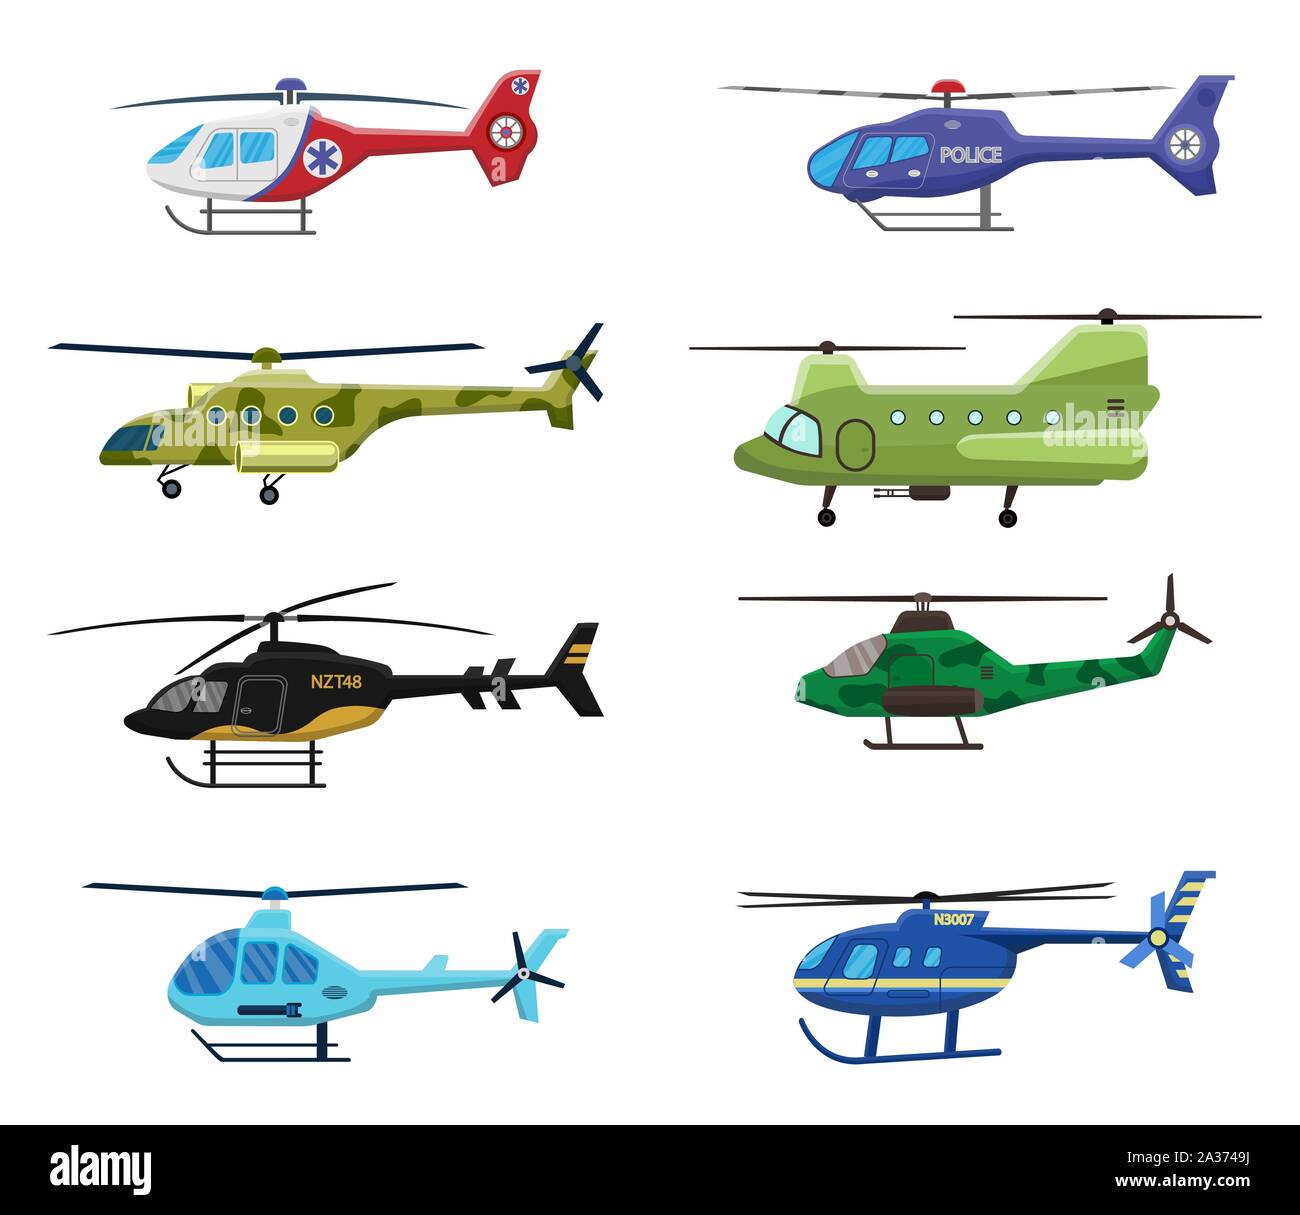 Militär, Polizei und medizinische Hubschrauber Symbol auf weißem Hintergrund, Luftverkehr, Luftfahrtindustrie, Vector Illustration. Stock Vektor